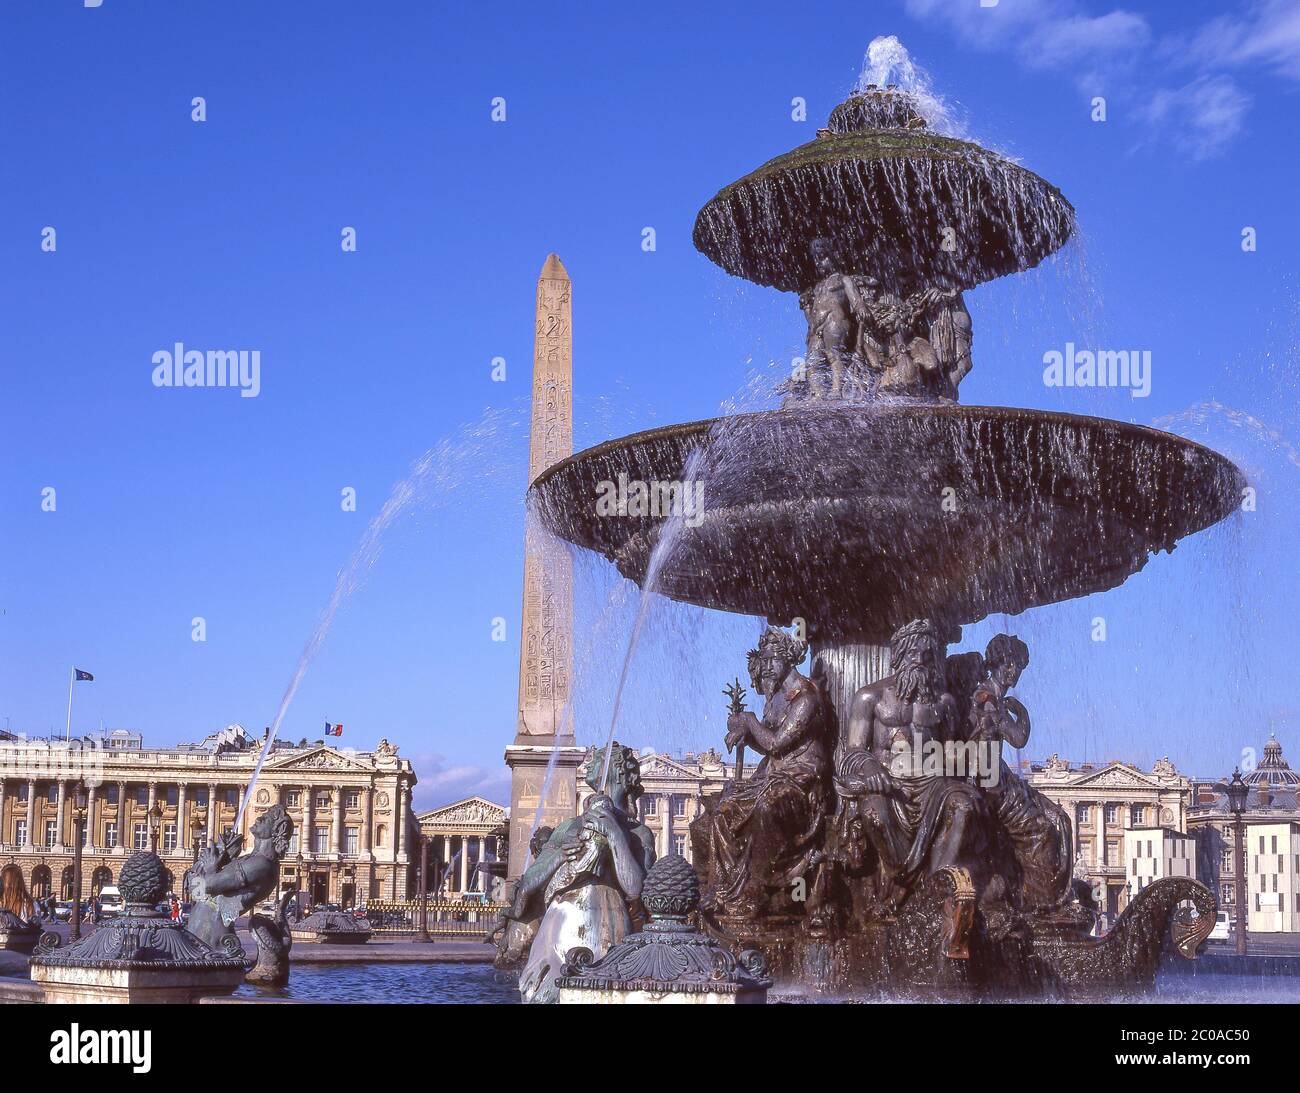 The Fountain of River Commerce and Navigation, Place de la Concorde, La Madeleine Quarter, Paris, Île-de-France, France Stock Photo